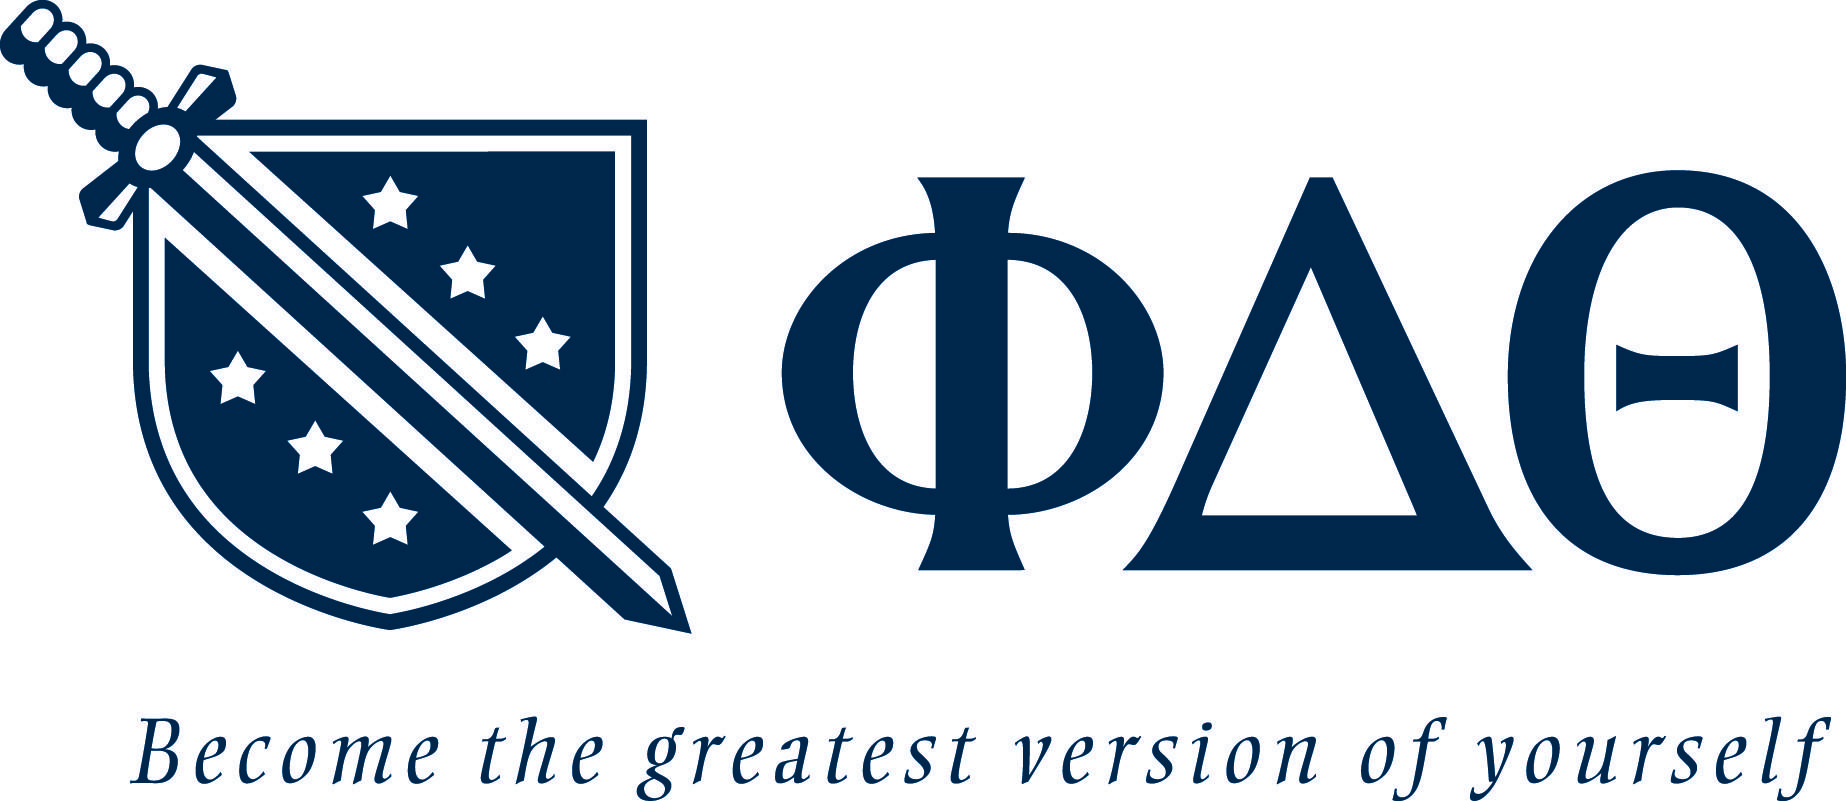 Phi Logo - Brand Assets - Phi Delta Theta Fraternity